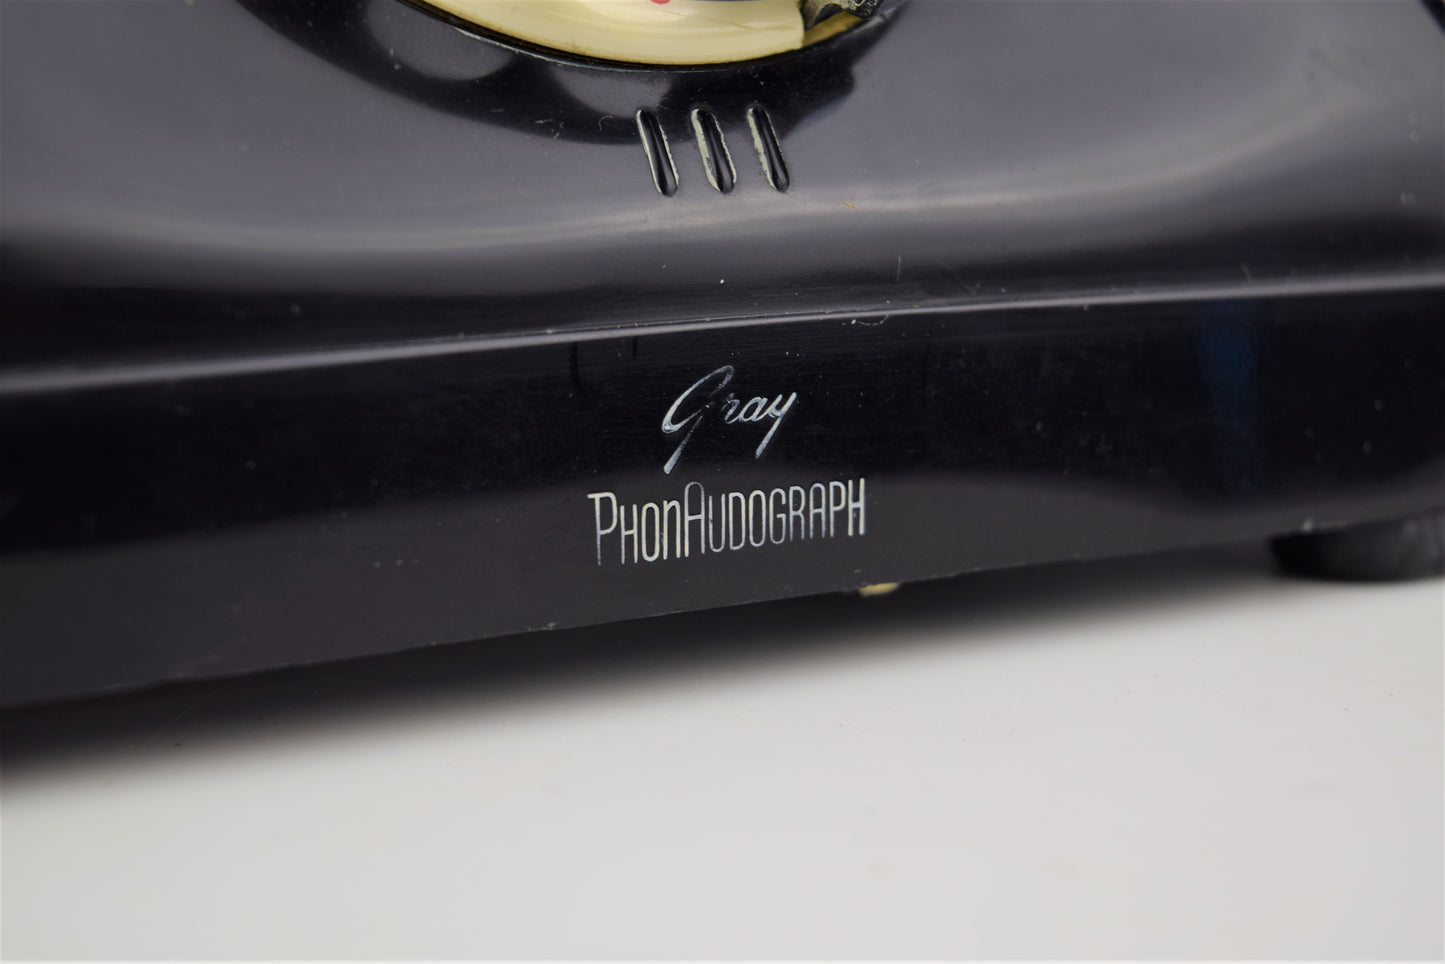 Connecticut - TP-6 - PhonAudograph